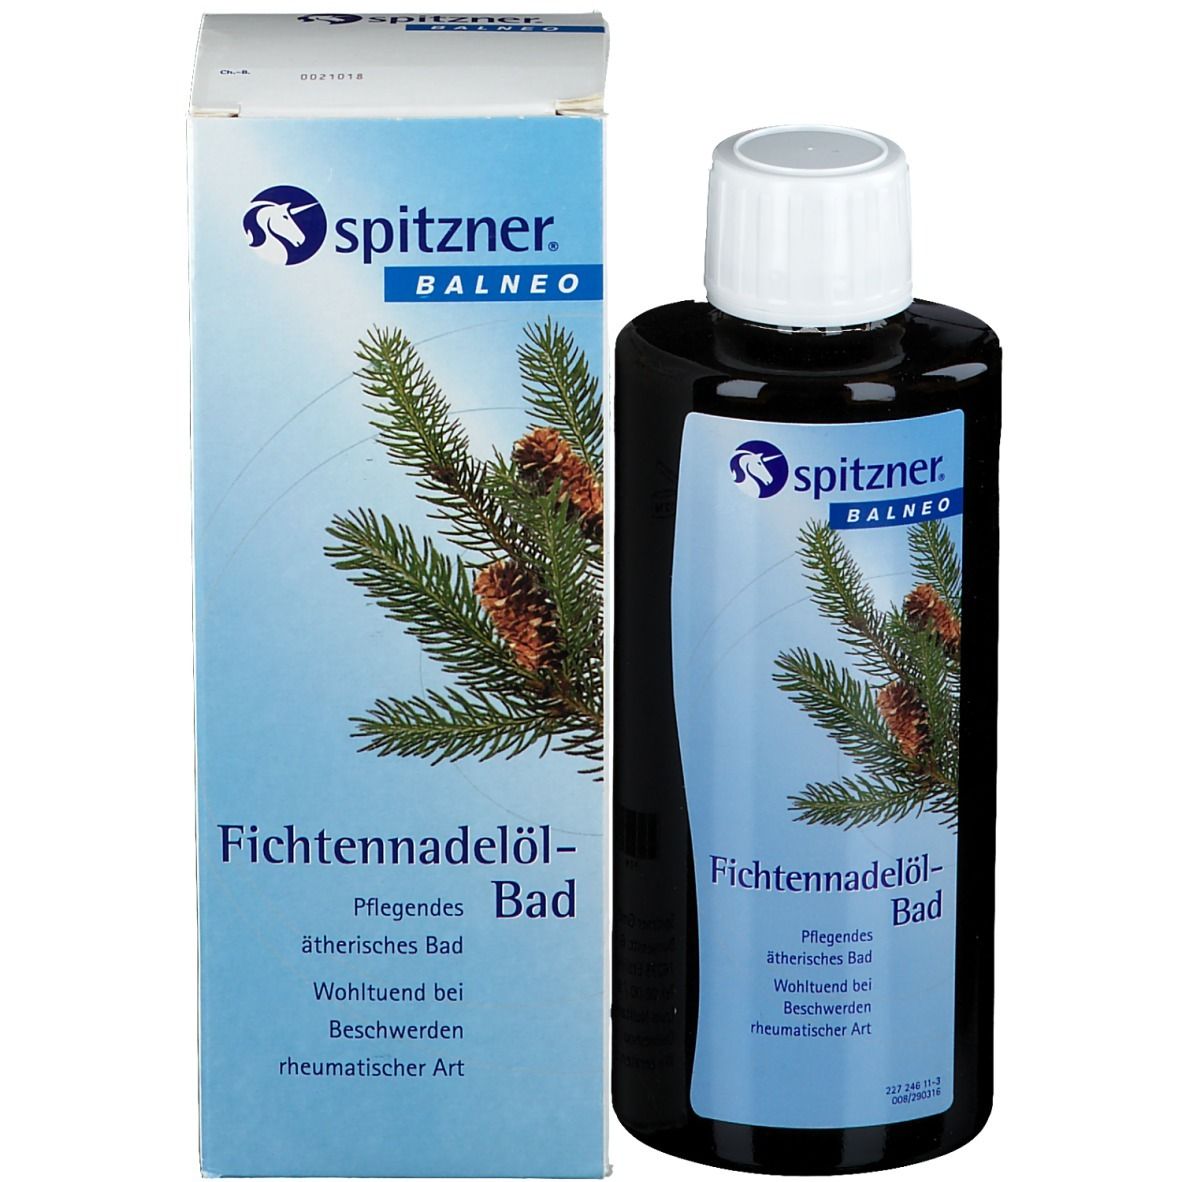 Spitzner® Balneo Fichtennadelöl-Bad